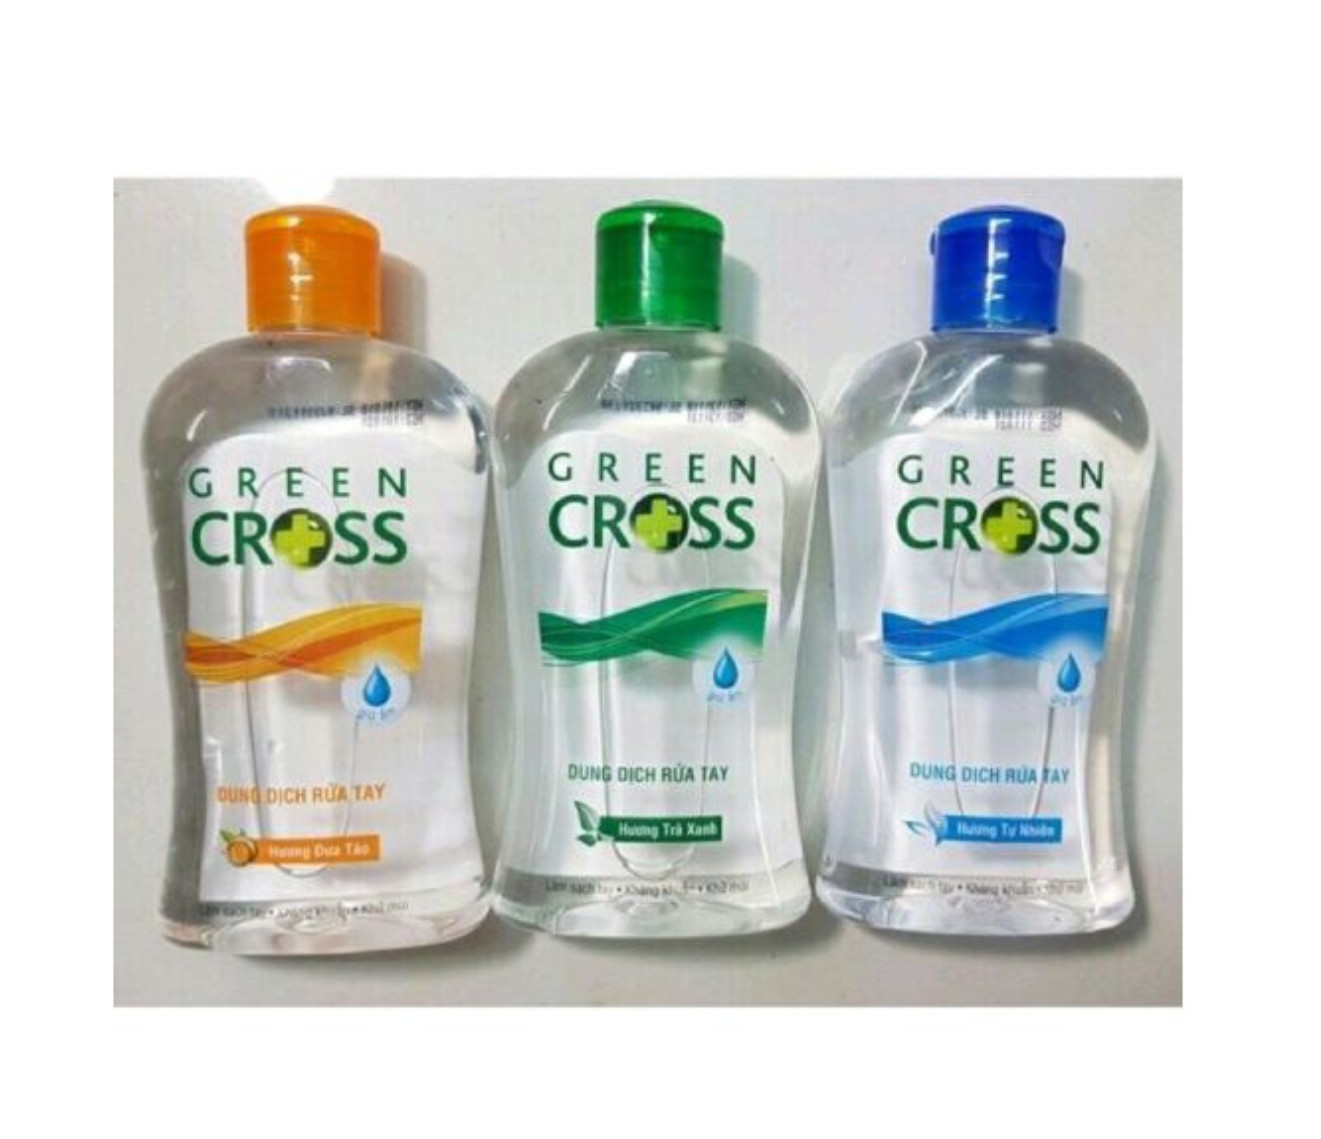 Nước rửa tay khô diệt khuẩn 100ml Green Cross mua tại ptptshop